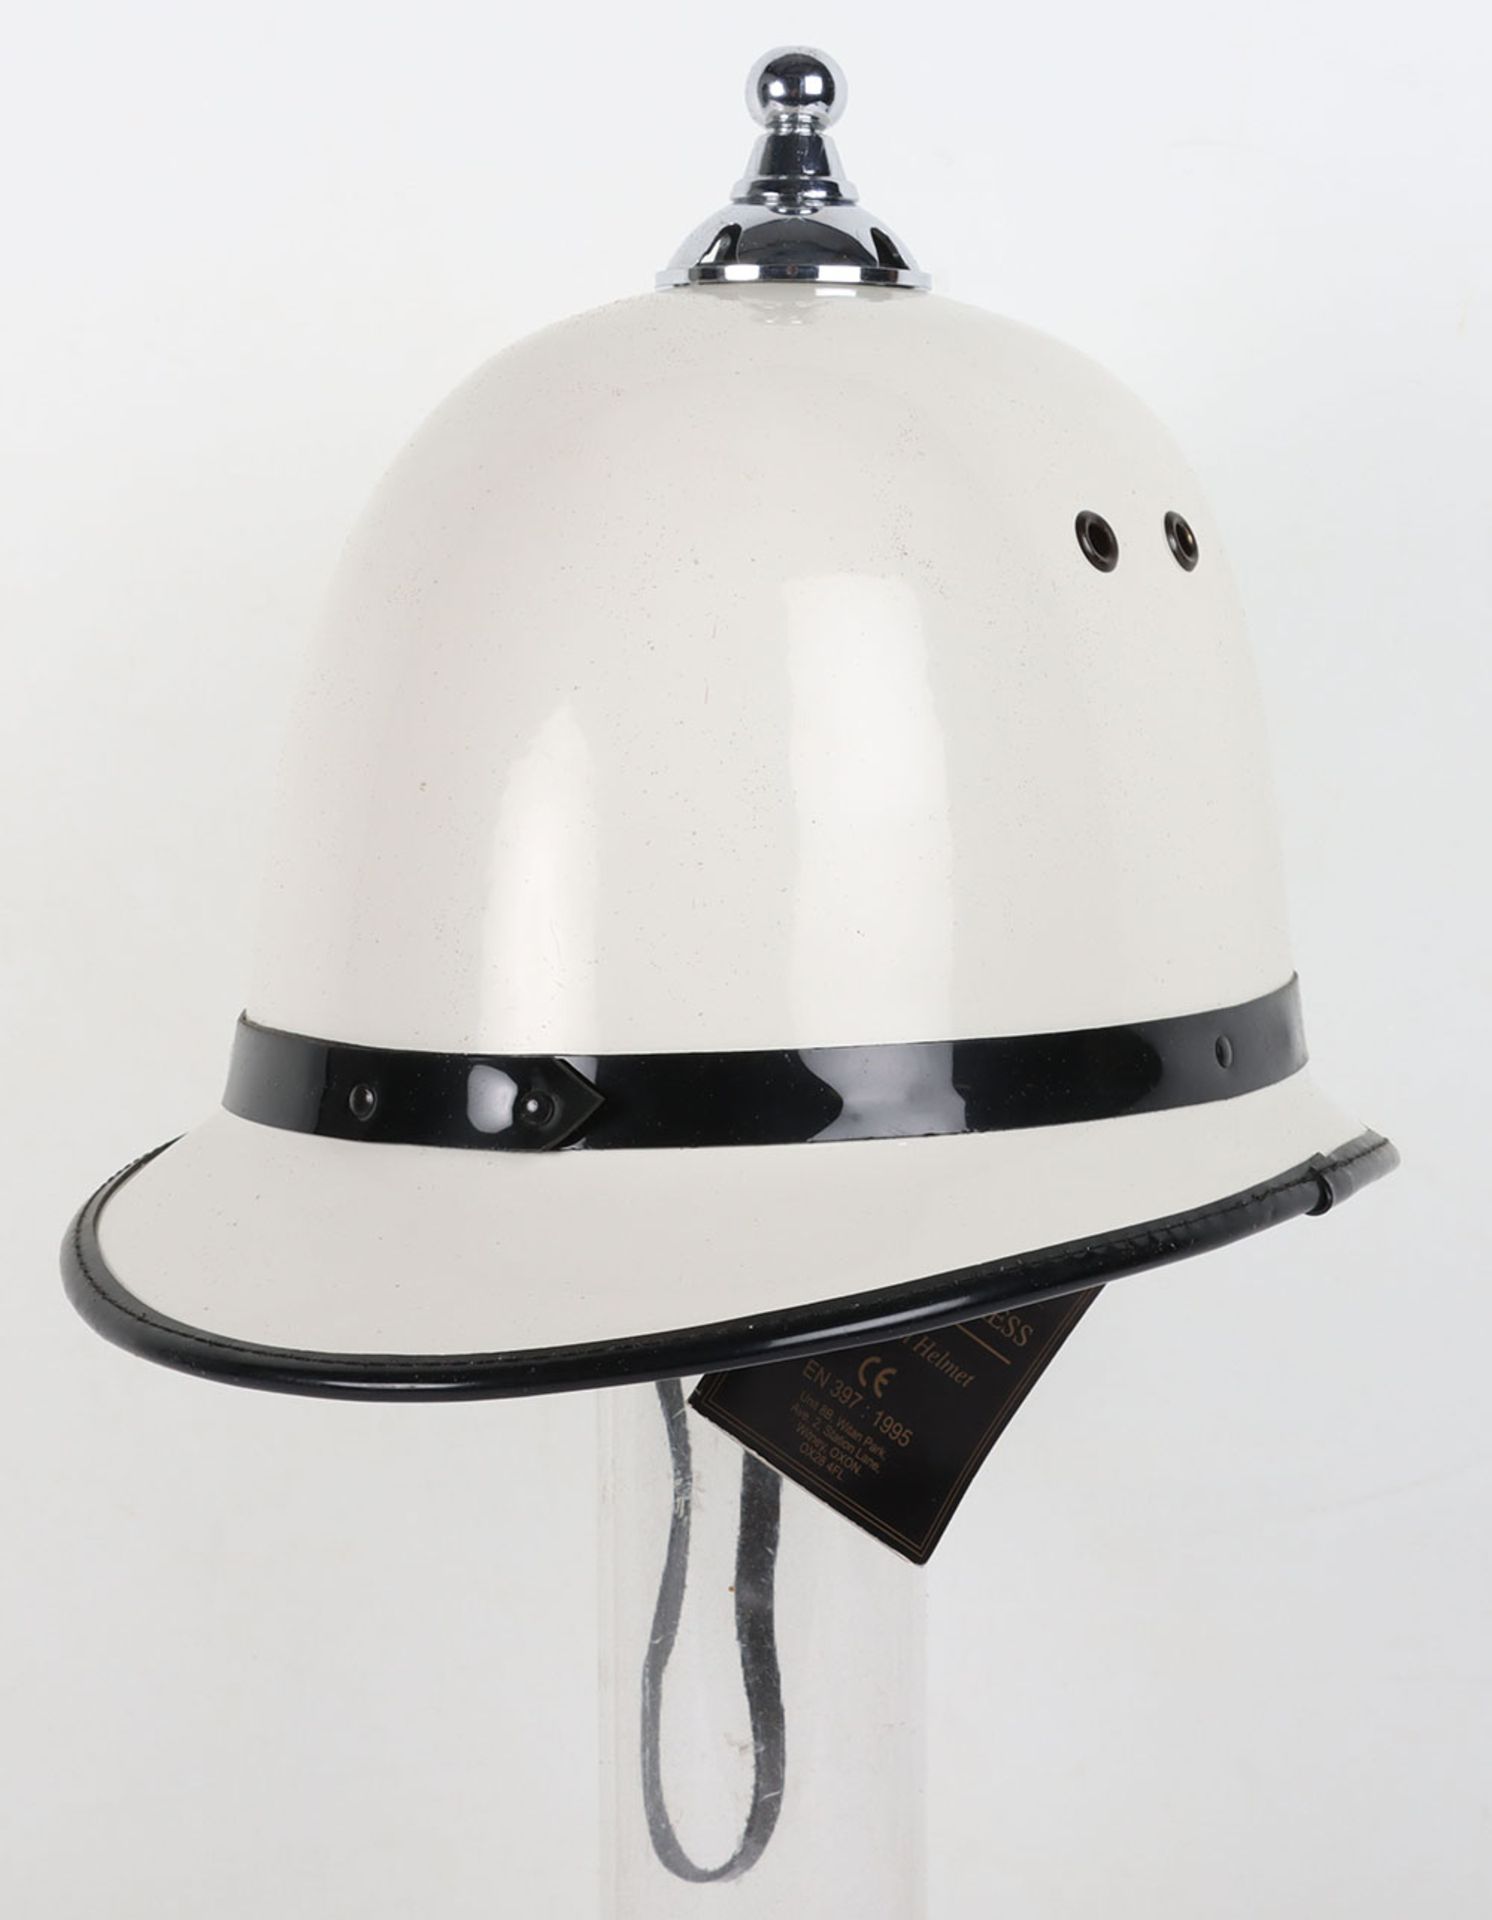 Obsolete Isle of Man Police White Summer Helmet - Bild 3 aus 4